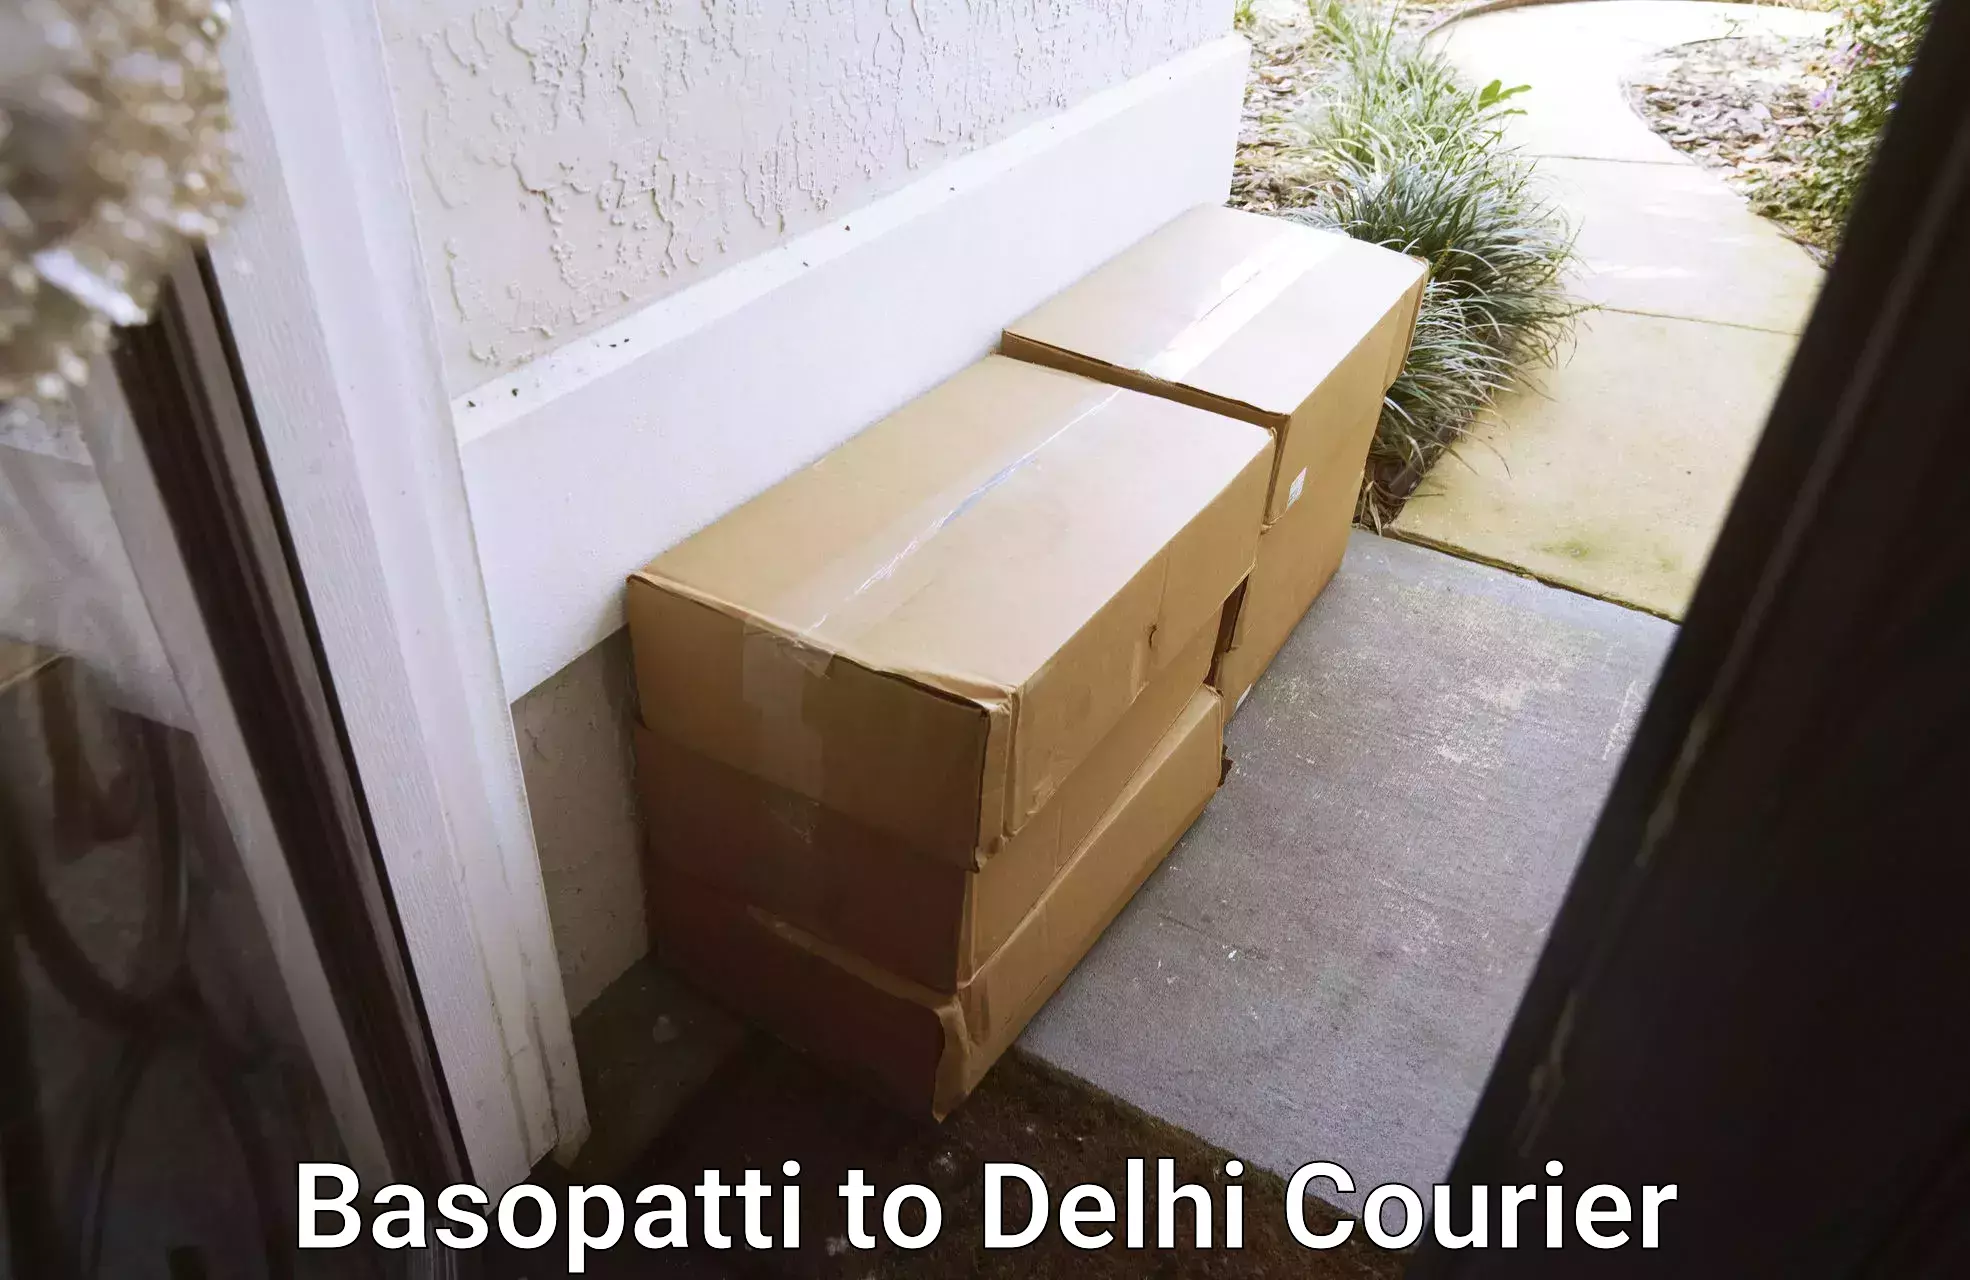 Budget-friendly movers Basopatti to East Delhi